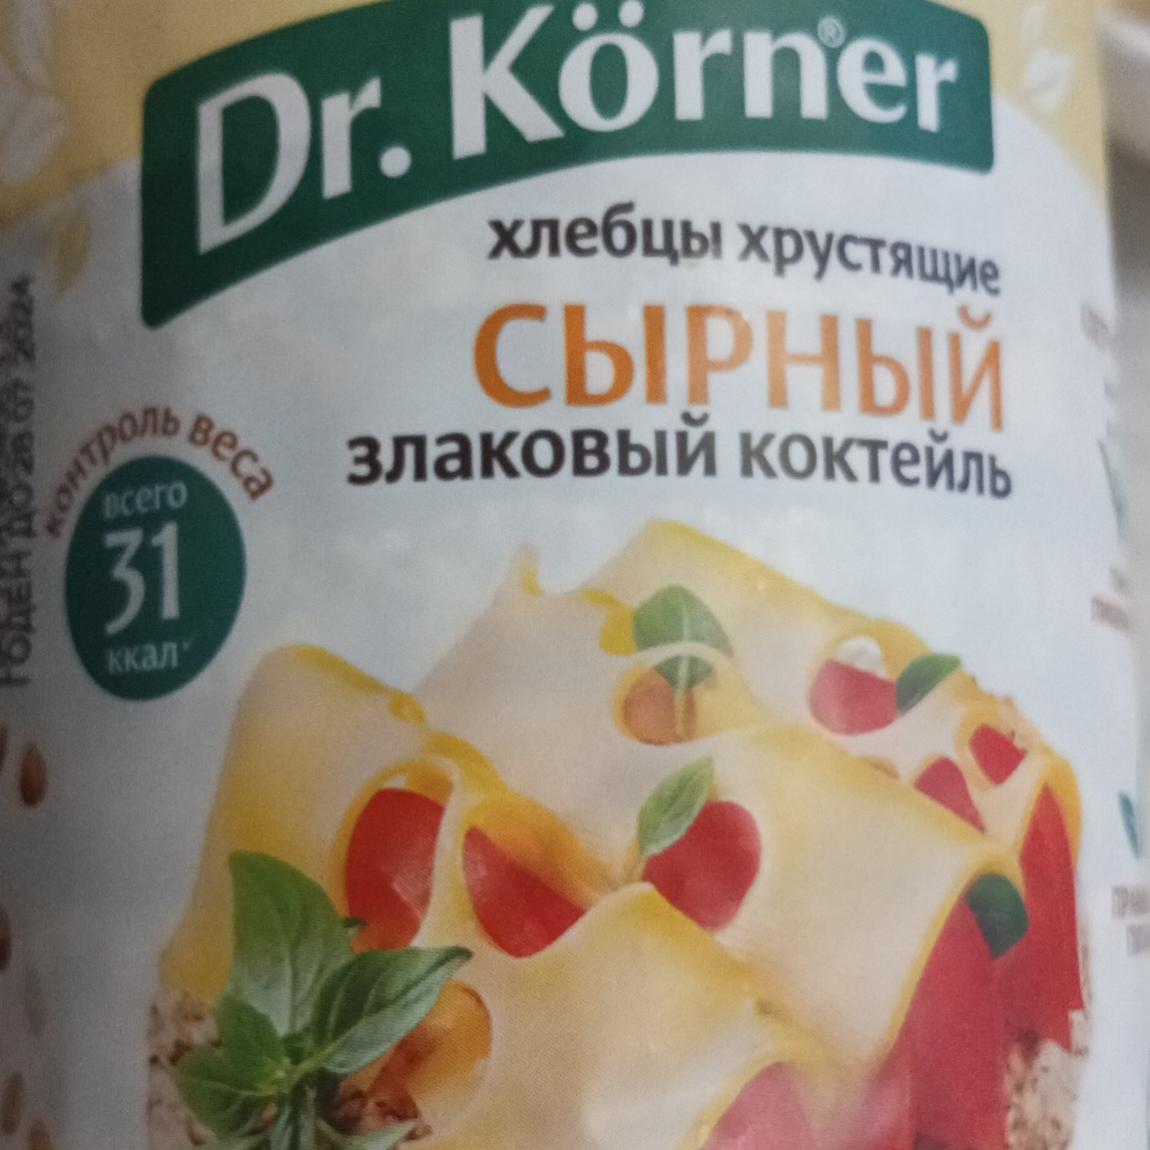 Фото - Хлебцы хрустяшие сырный злаковый коктейль Dr.Körner